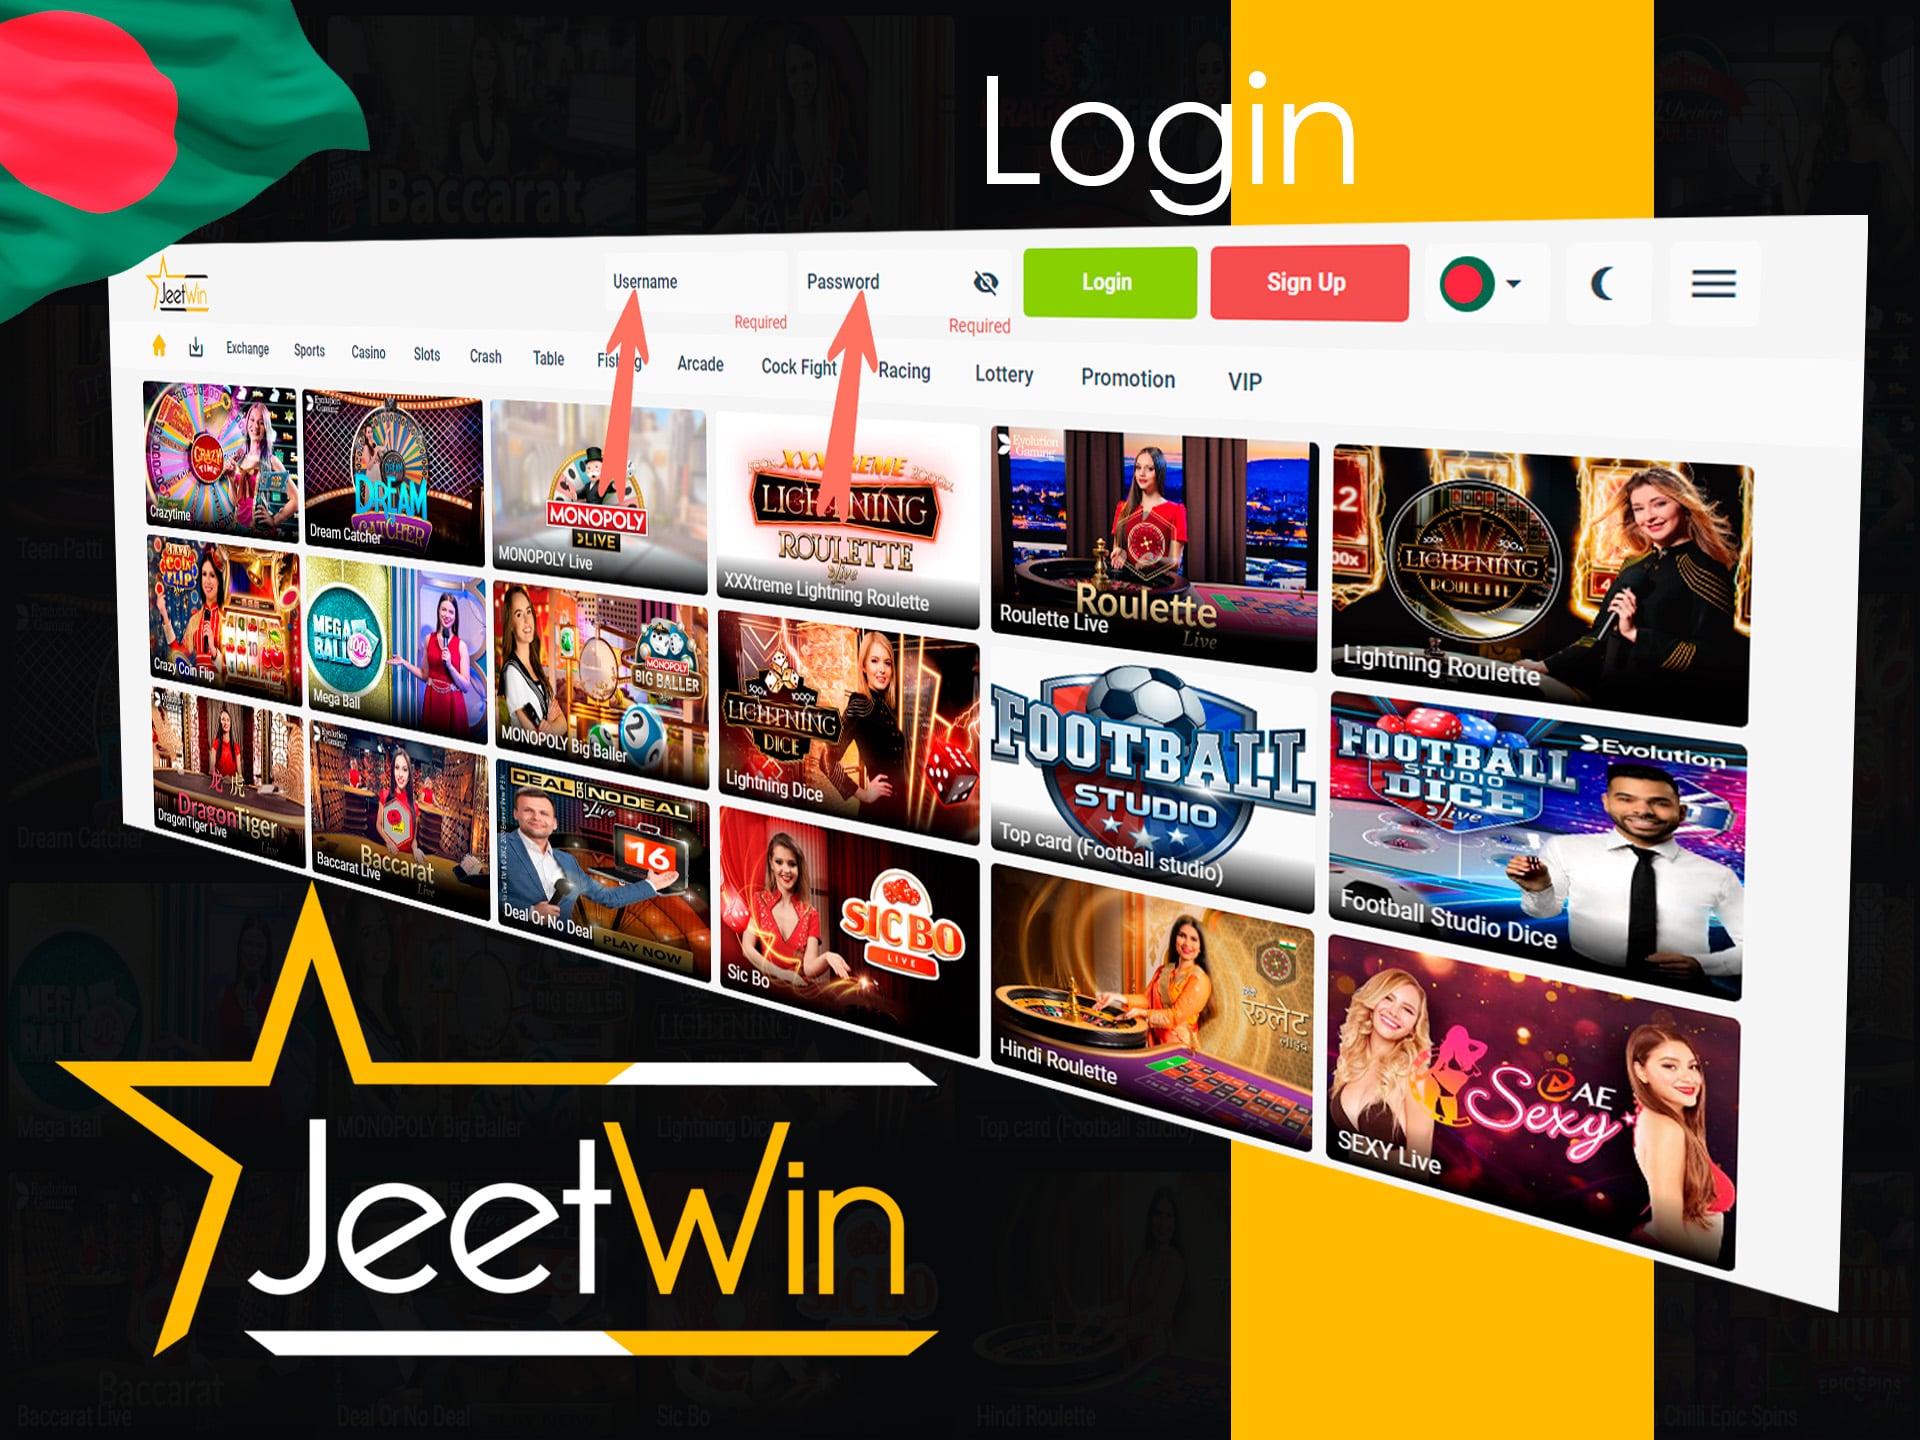 bangladeshi jeetwin login guide